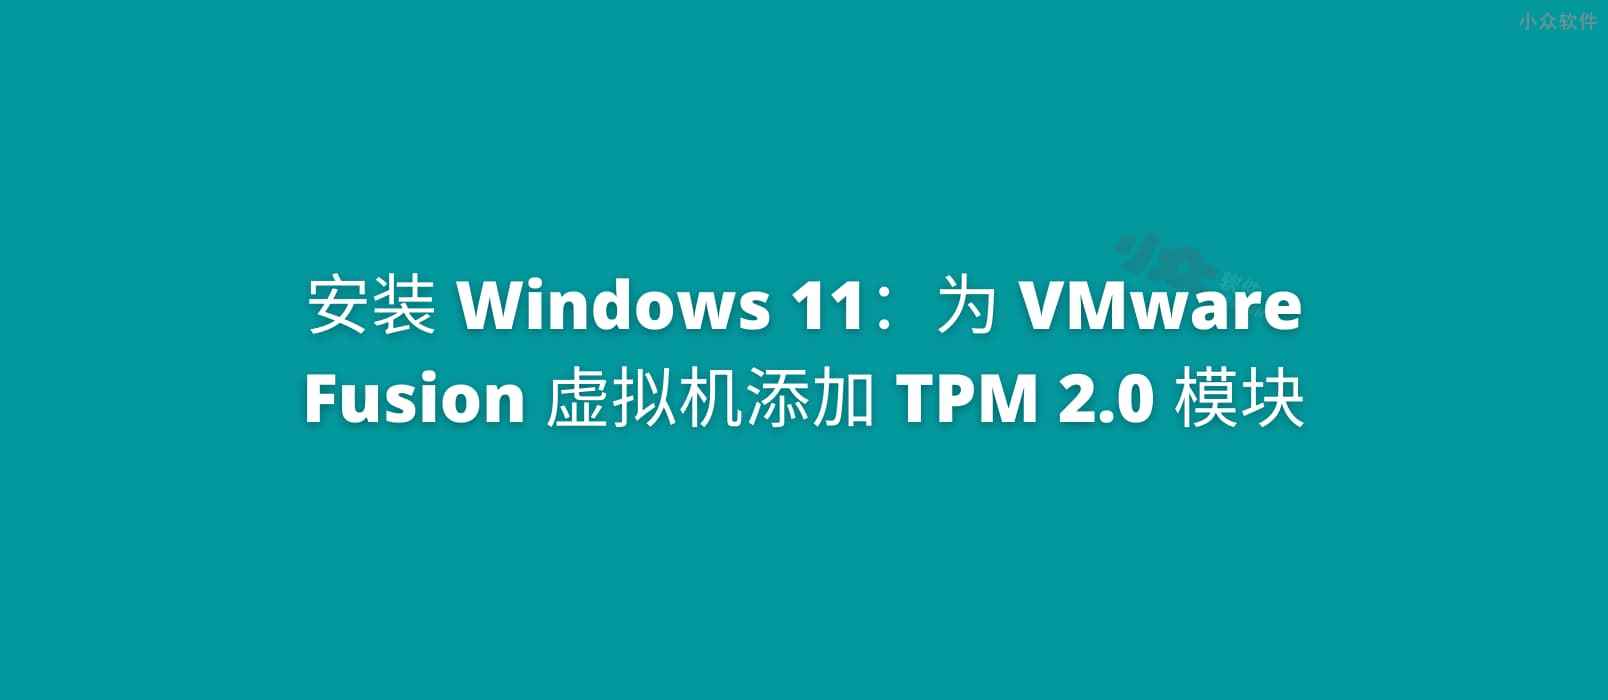 为 VMware Fusion 虚拟机添加 TPM 2.0 模块，安装 Windows 11